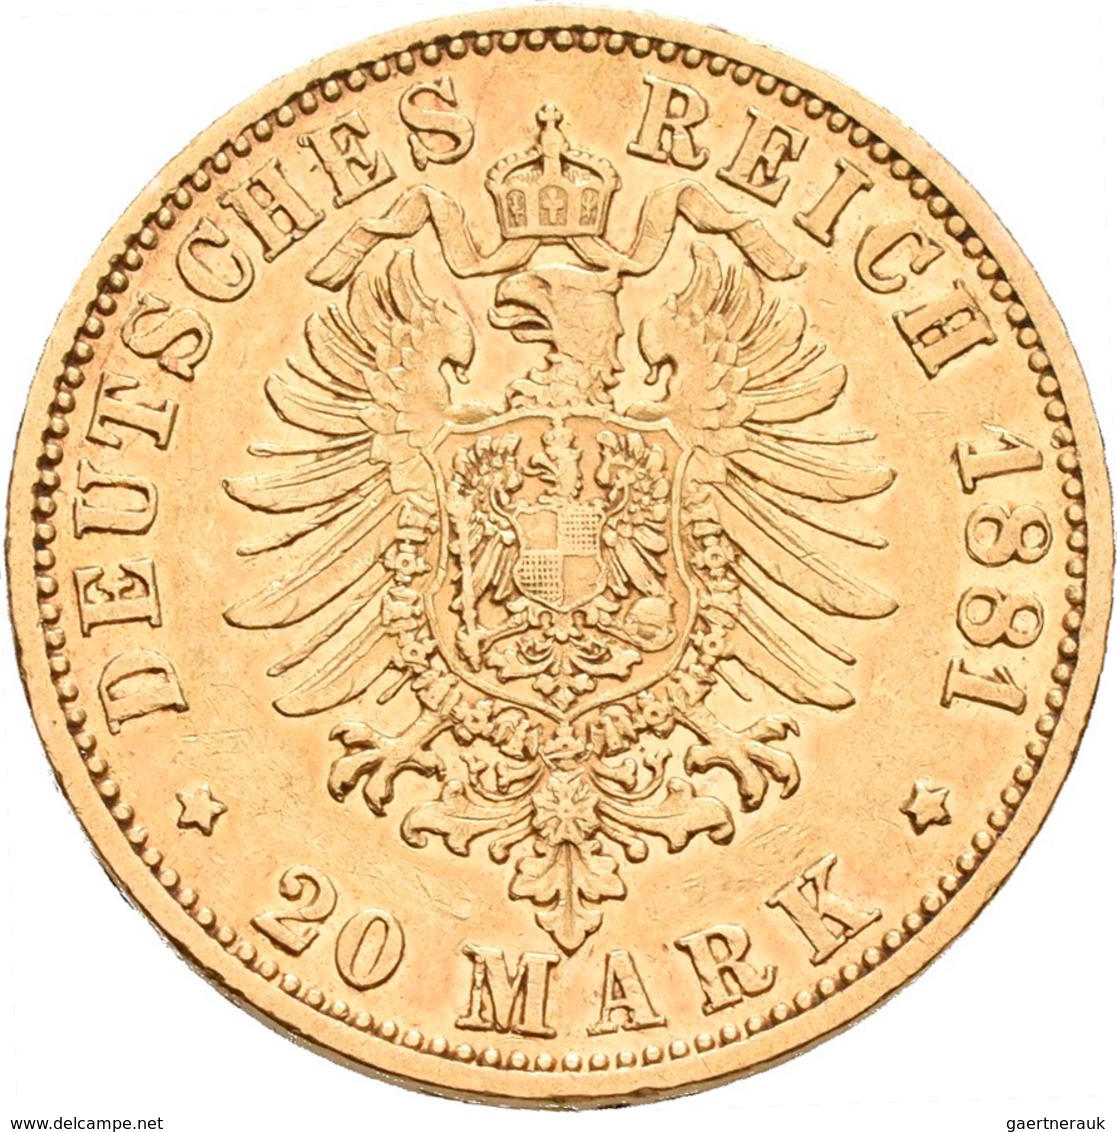 Reuß Jüngerer Linie: Heinrich XIV. 1867-1913: 20 Mark 1881 A, Jaeger 256. 7,91 G, 900/1000 Gold. Auf - Monete D'oro